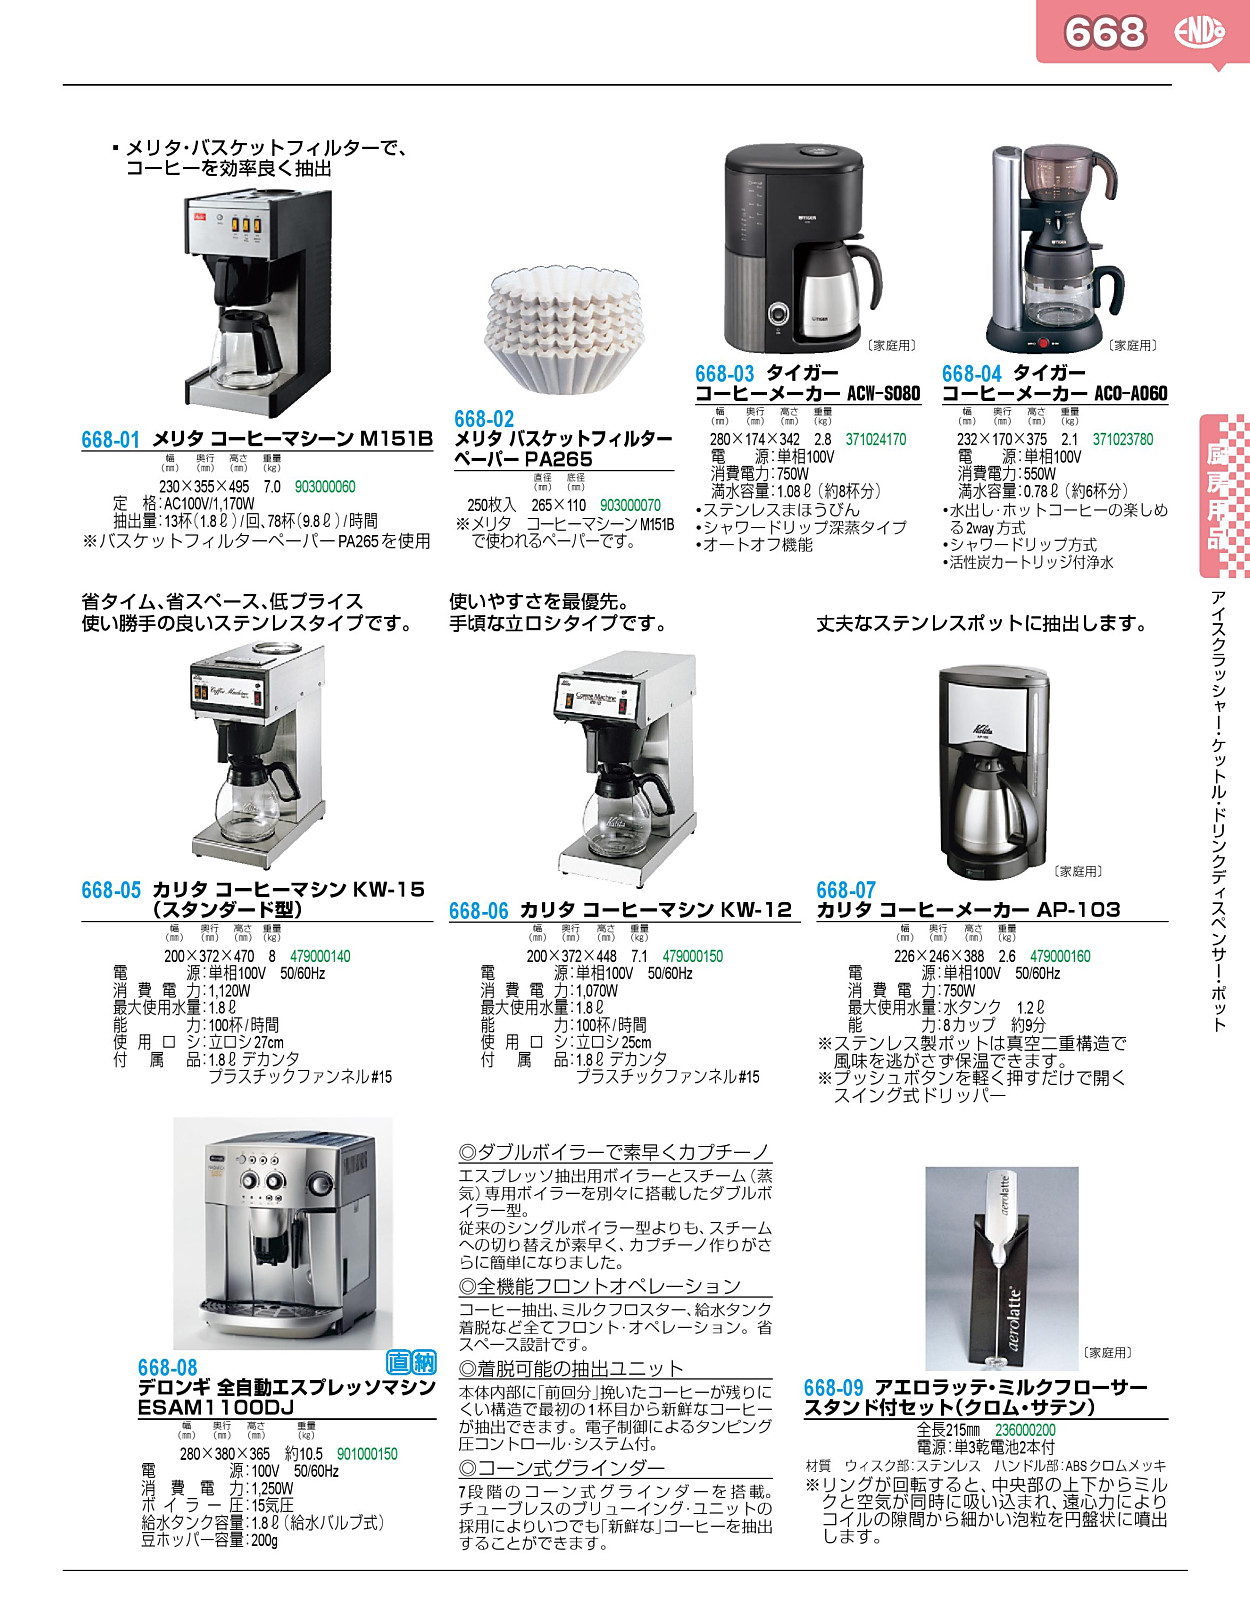 668-06 カリタ コーヒーマシン KW-12 479000150 業務用調理器具、食器洗浄機、冷凍庫など厨房機器∥おいしい厨房